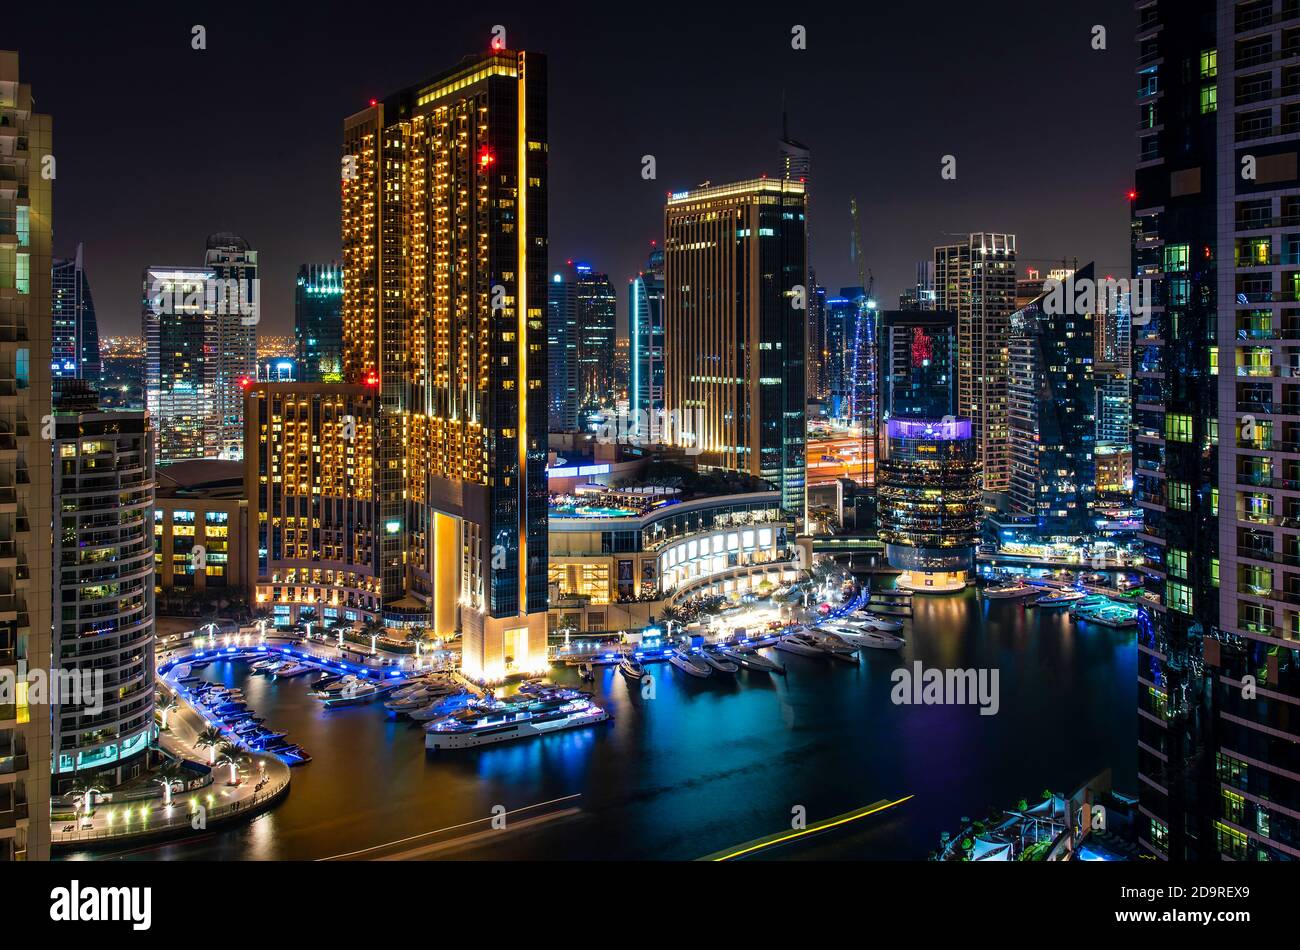 Dubai, Vereinigte Arabische Emirate - November 16, 2018: Dubai Marina Nacht Blick auf moderne Architektur und Luxus der berühmten Reiseziel Stockfoto